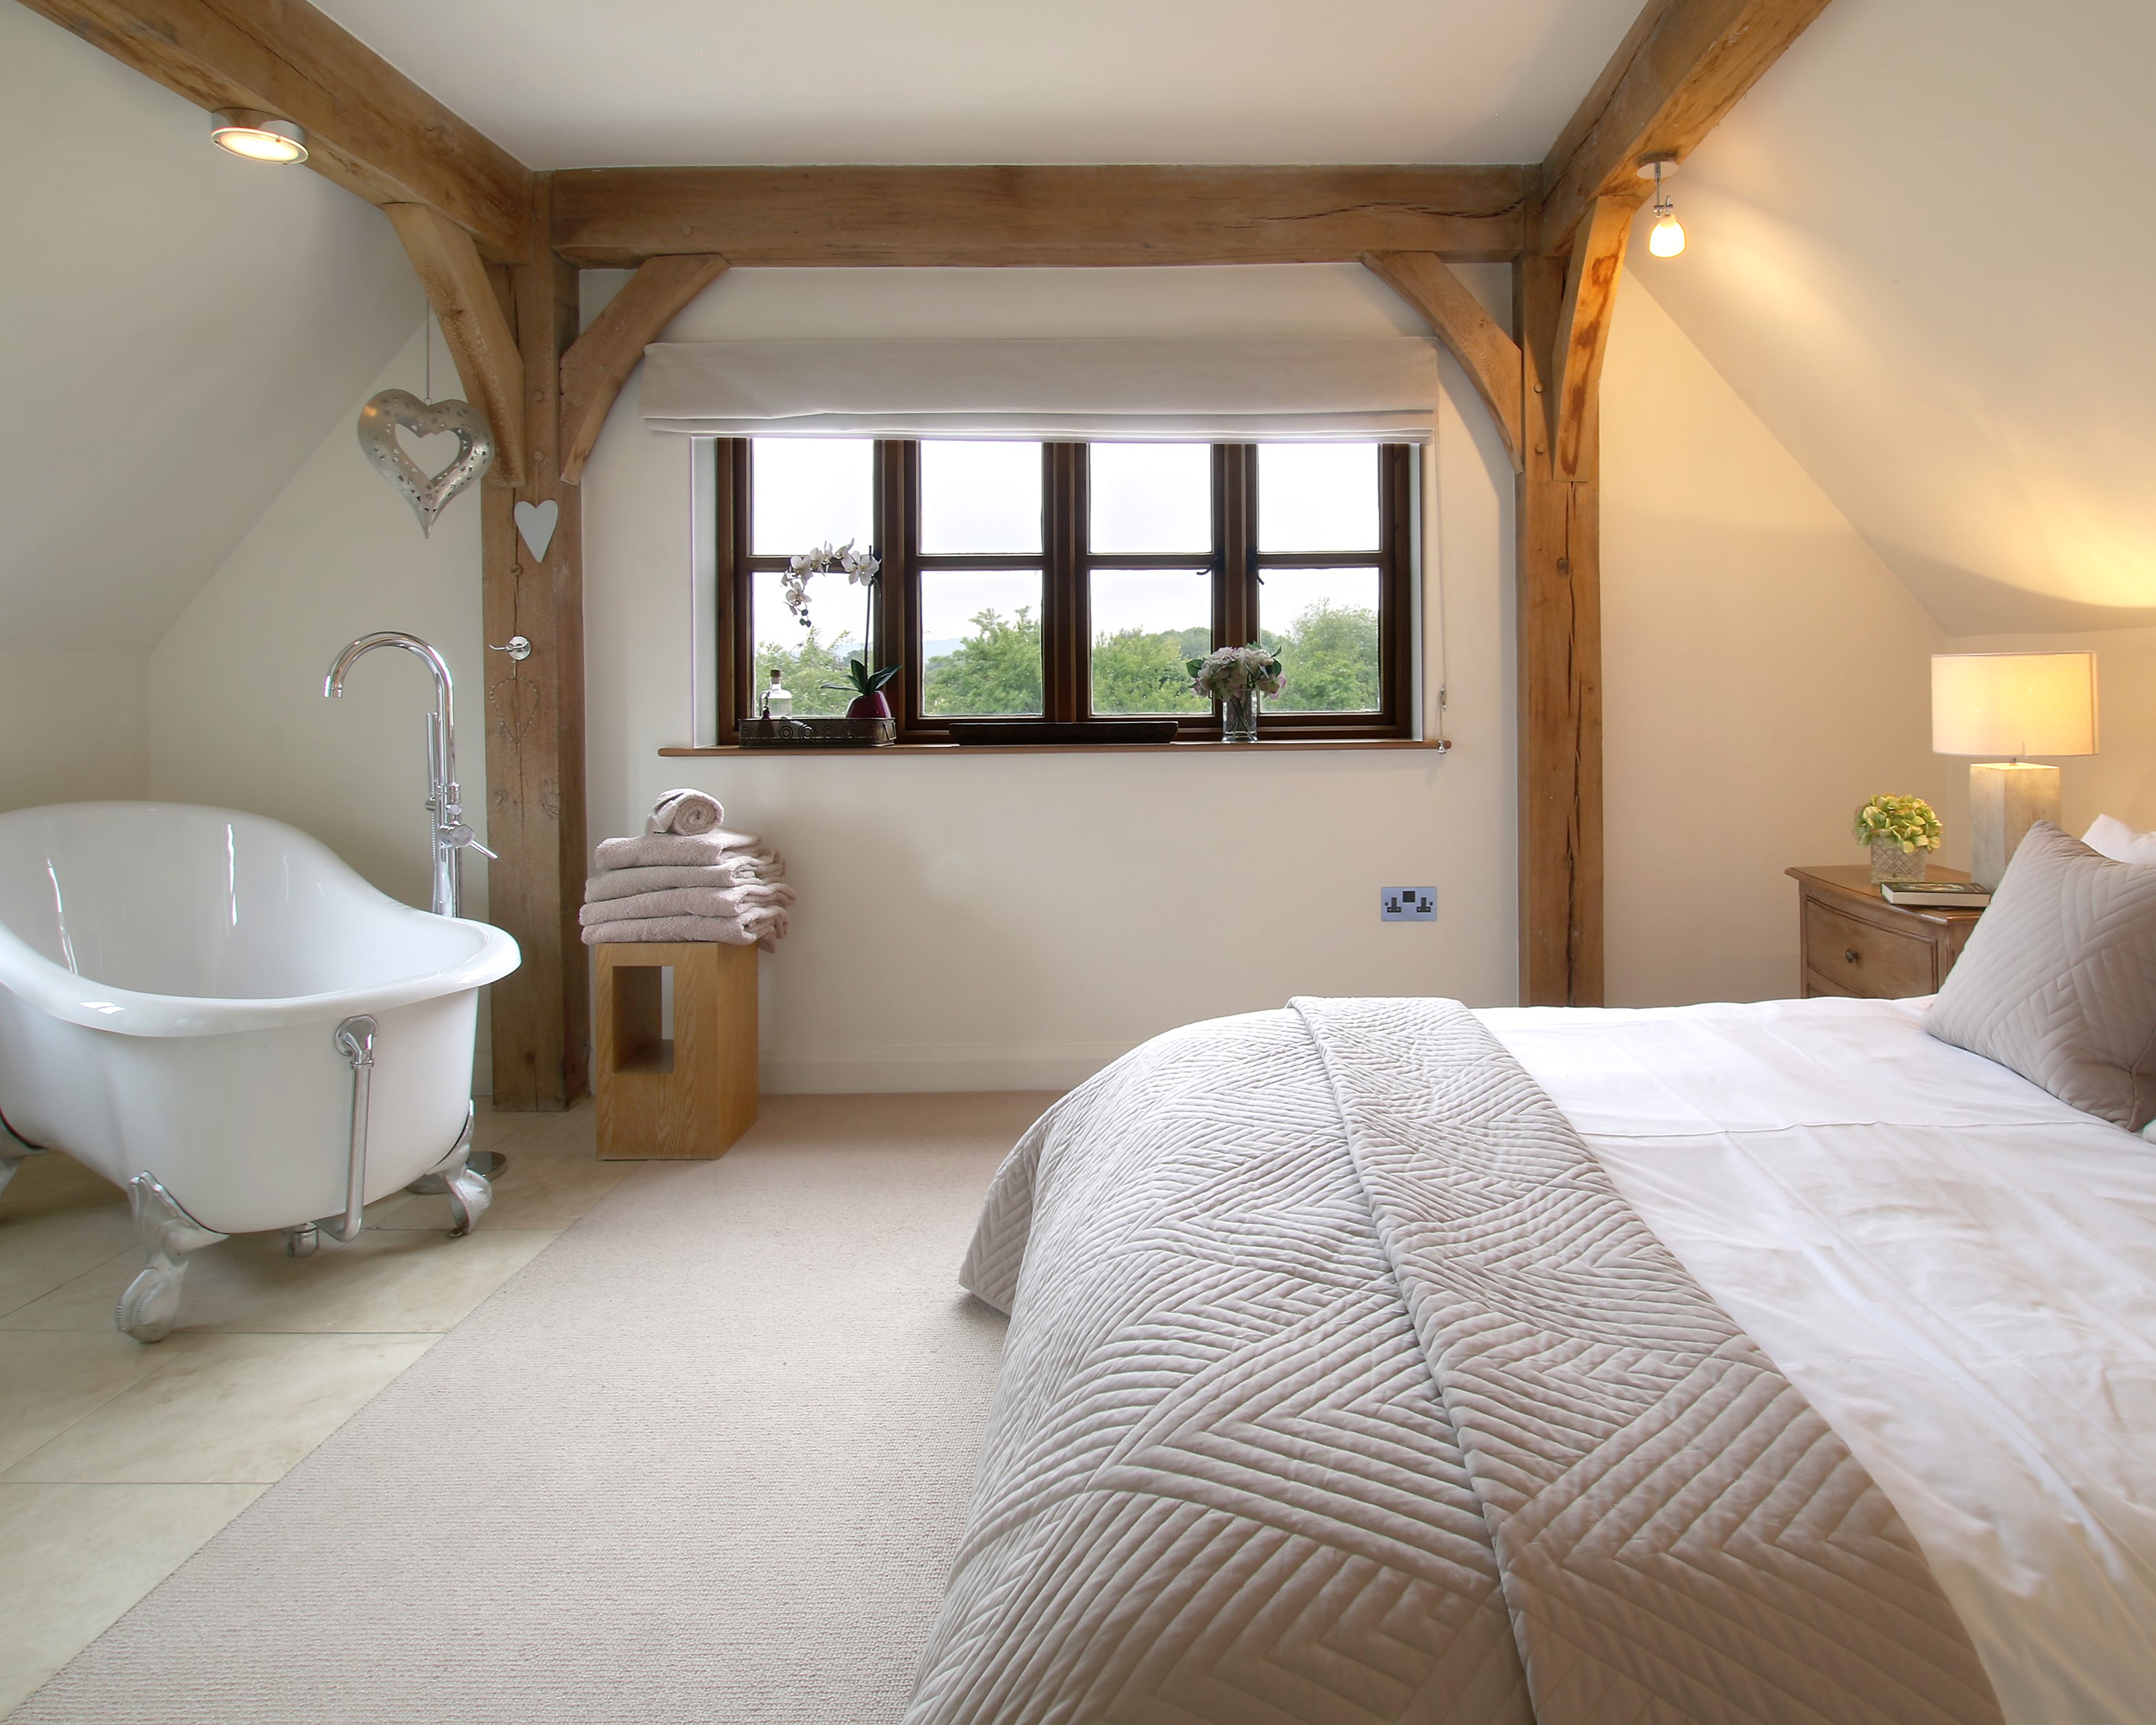 Bedroom with freestanding bath